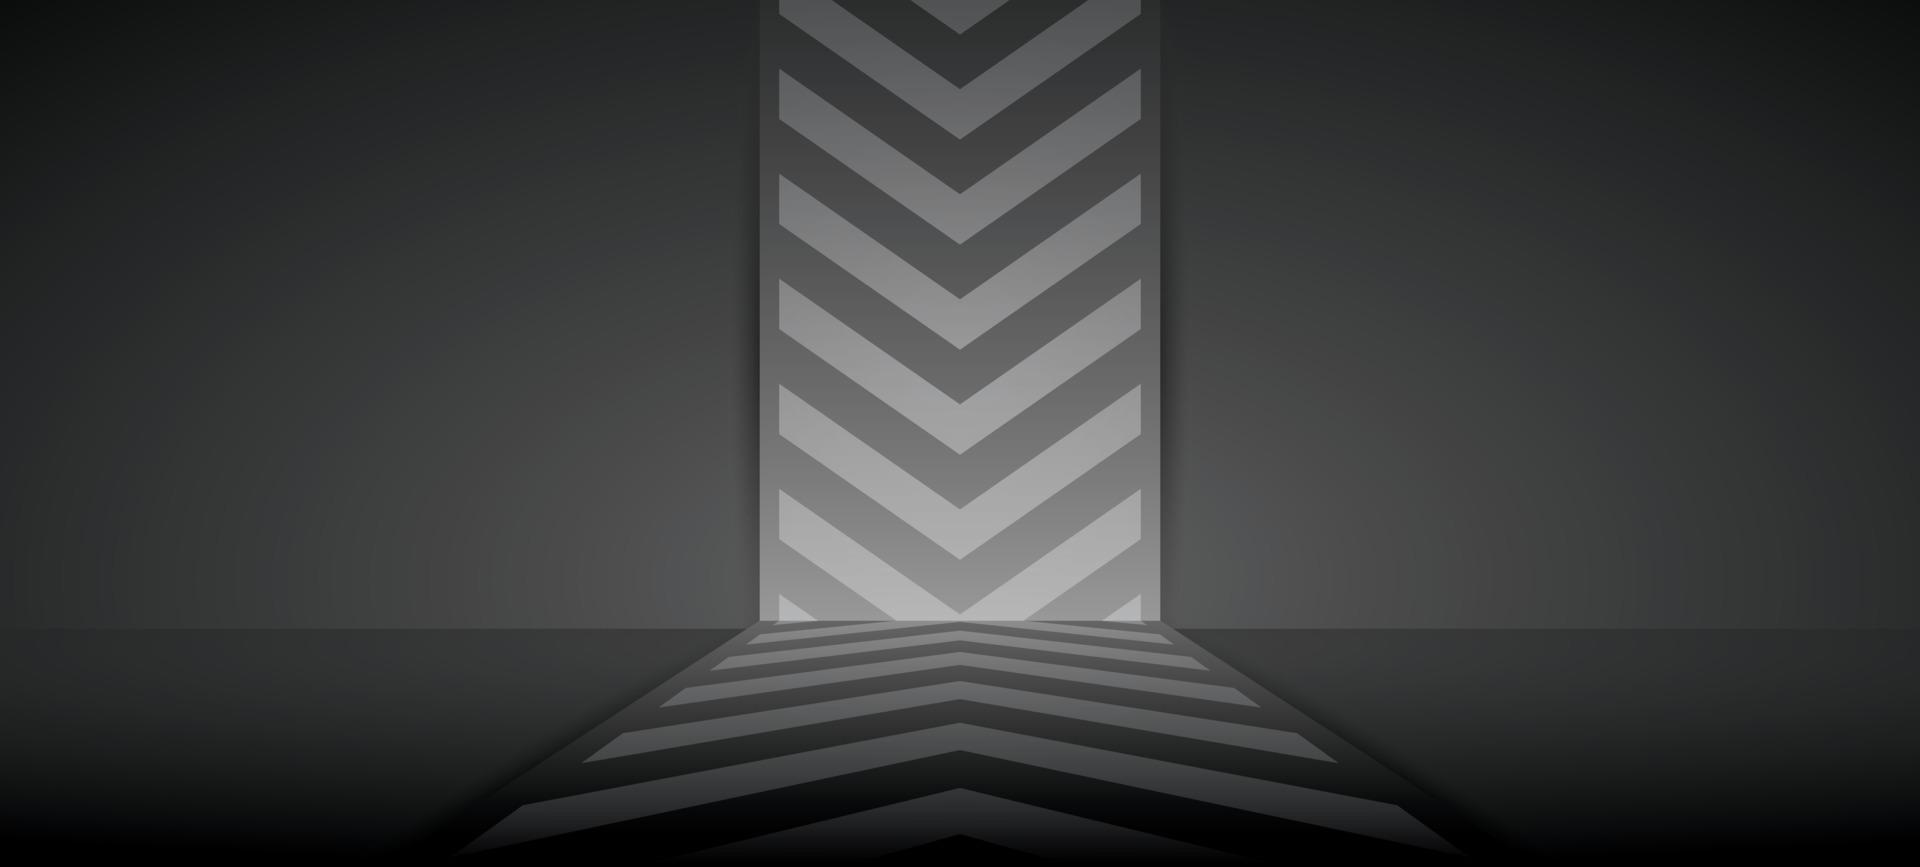 parete di sfondo con motivo grafico a freccia su sfondo nero scuro illustrazione 3d vettore per mettere l'oggetto